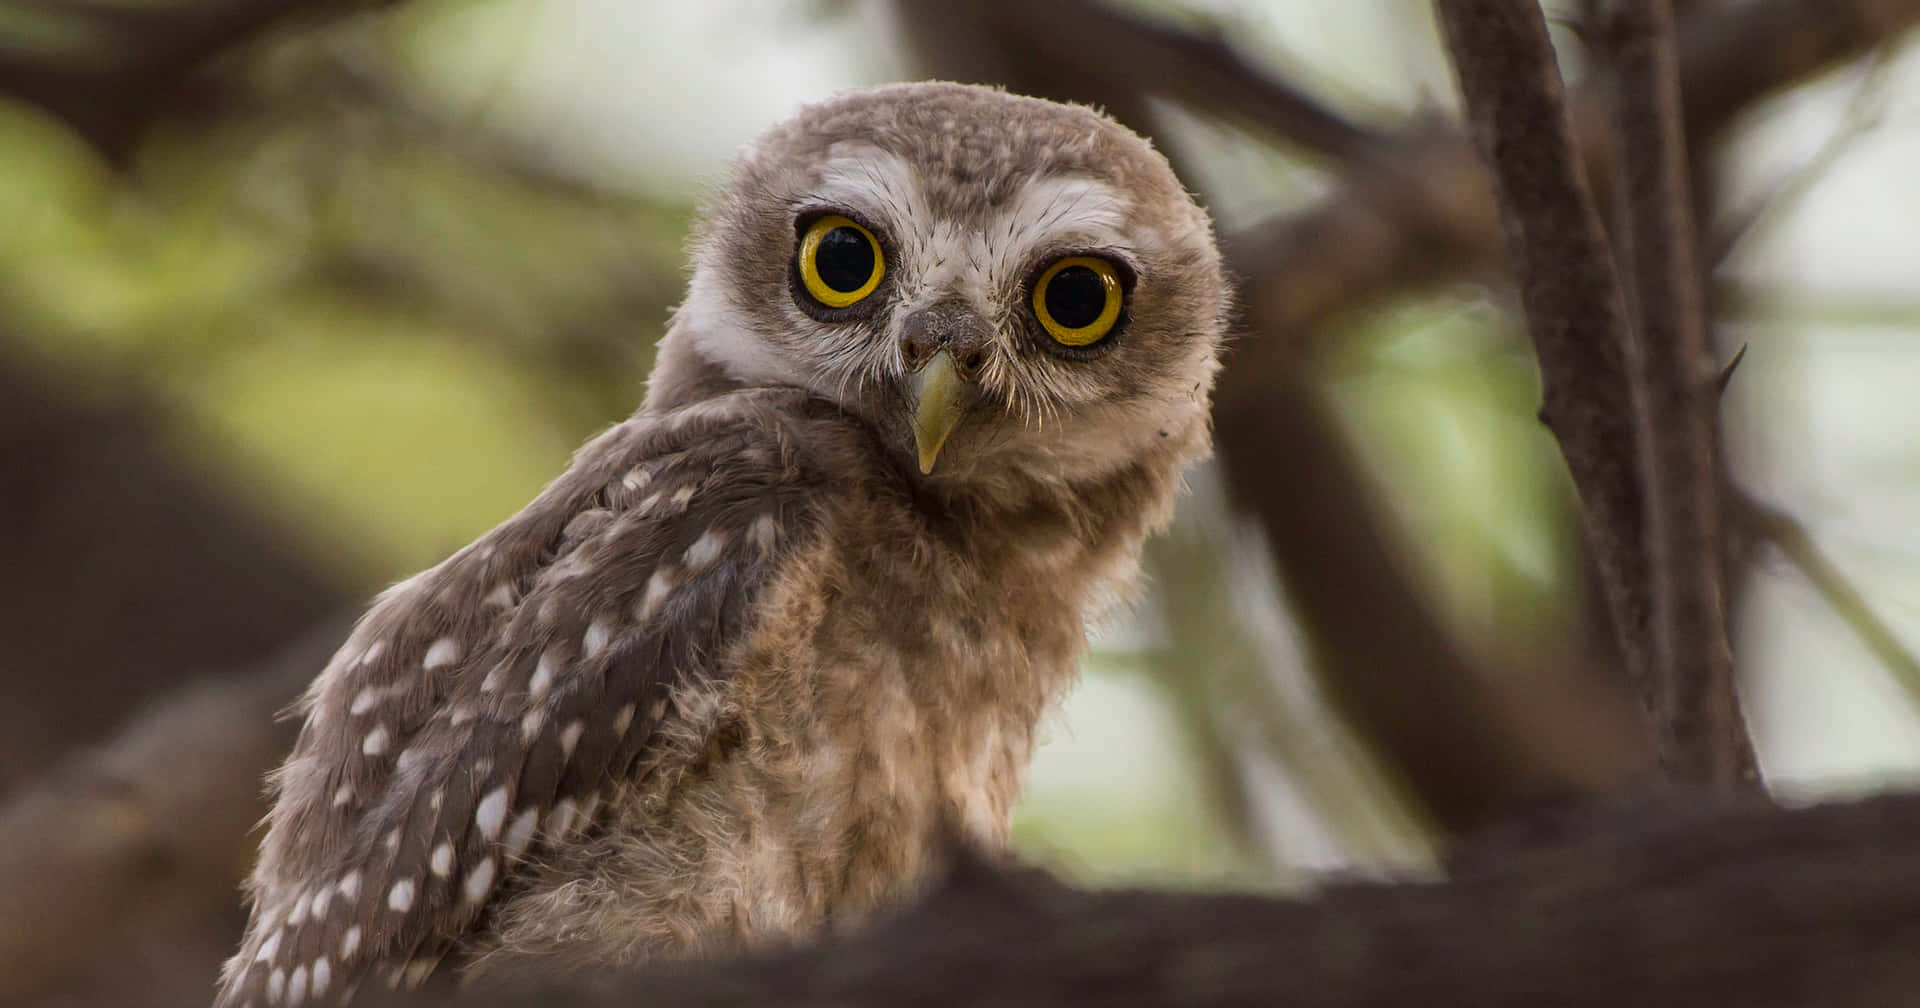 Enchanting Hazel-eyed Owl Perched At Dusk